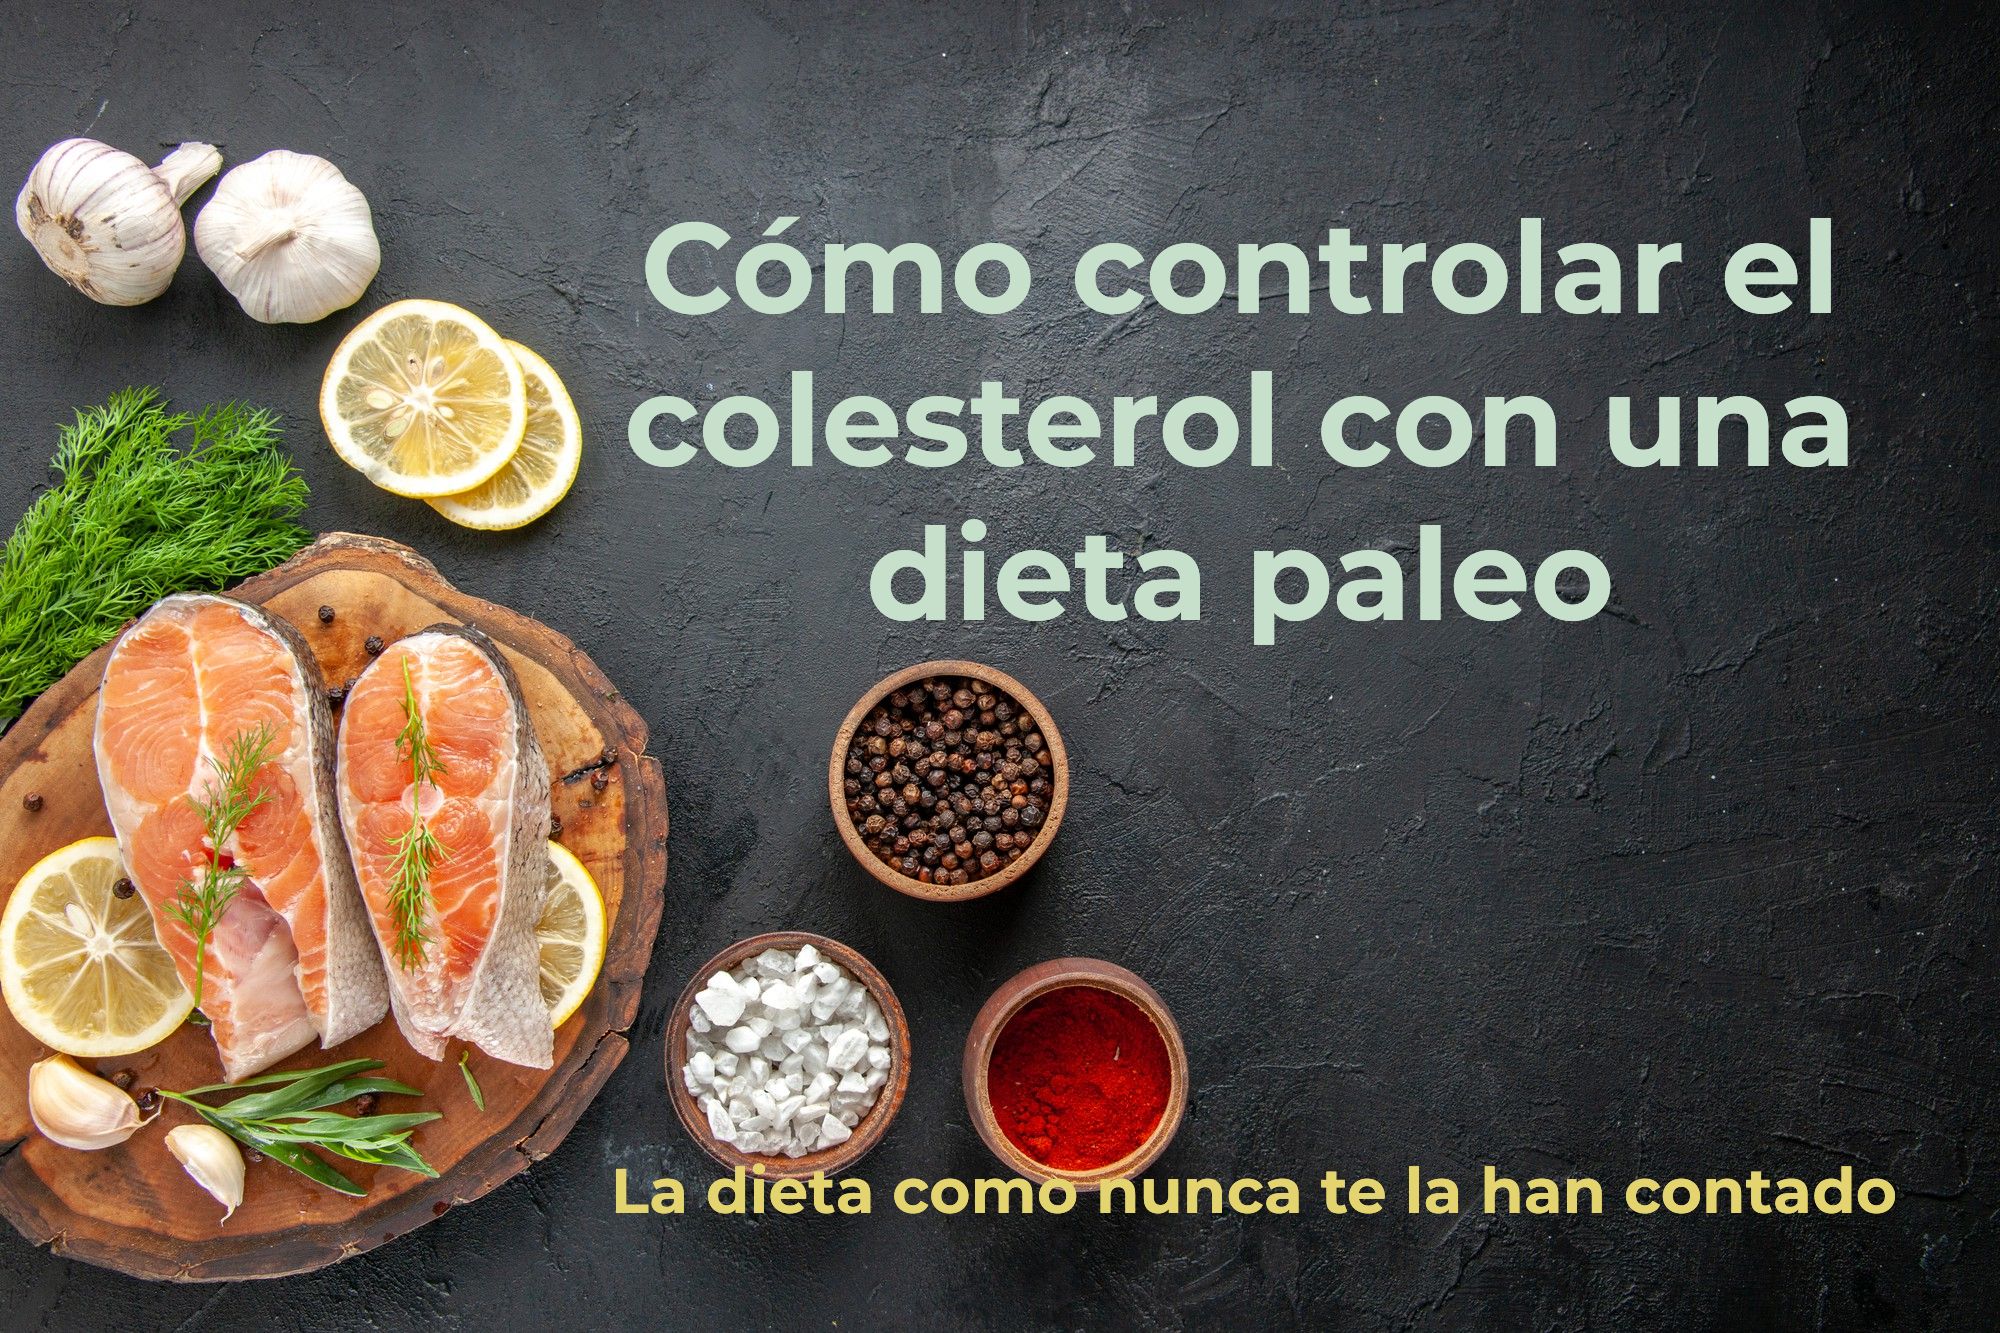 Cómo controlar el colesterol con una dieta paleo: alimentos recomendados y prohibidos